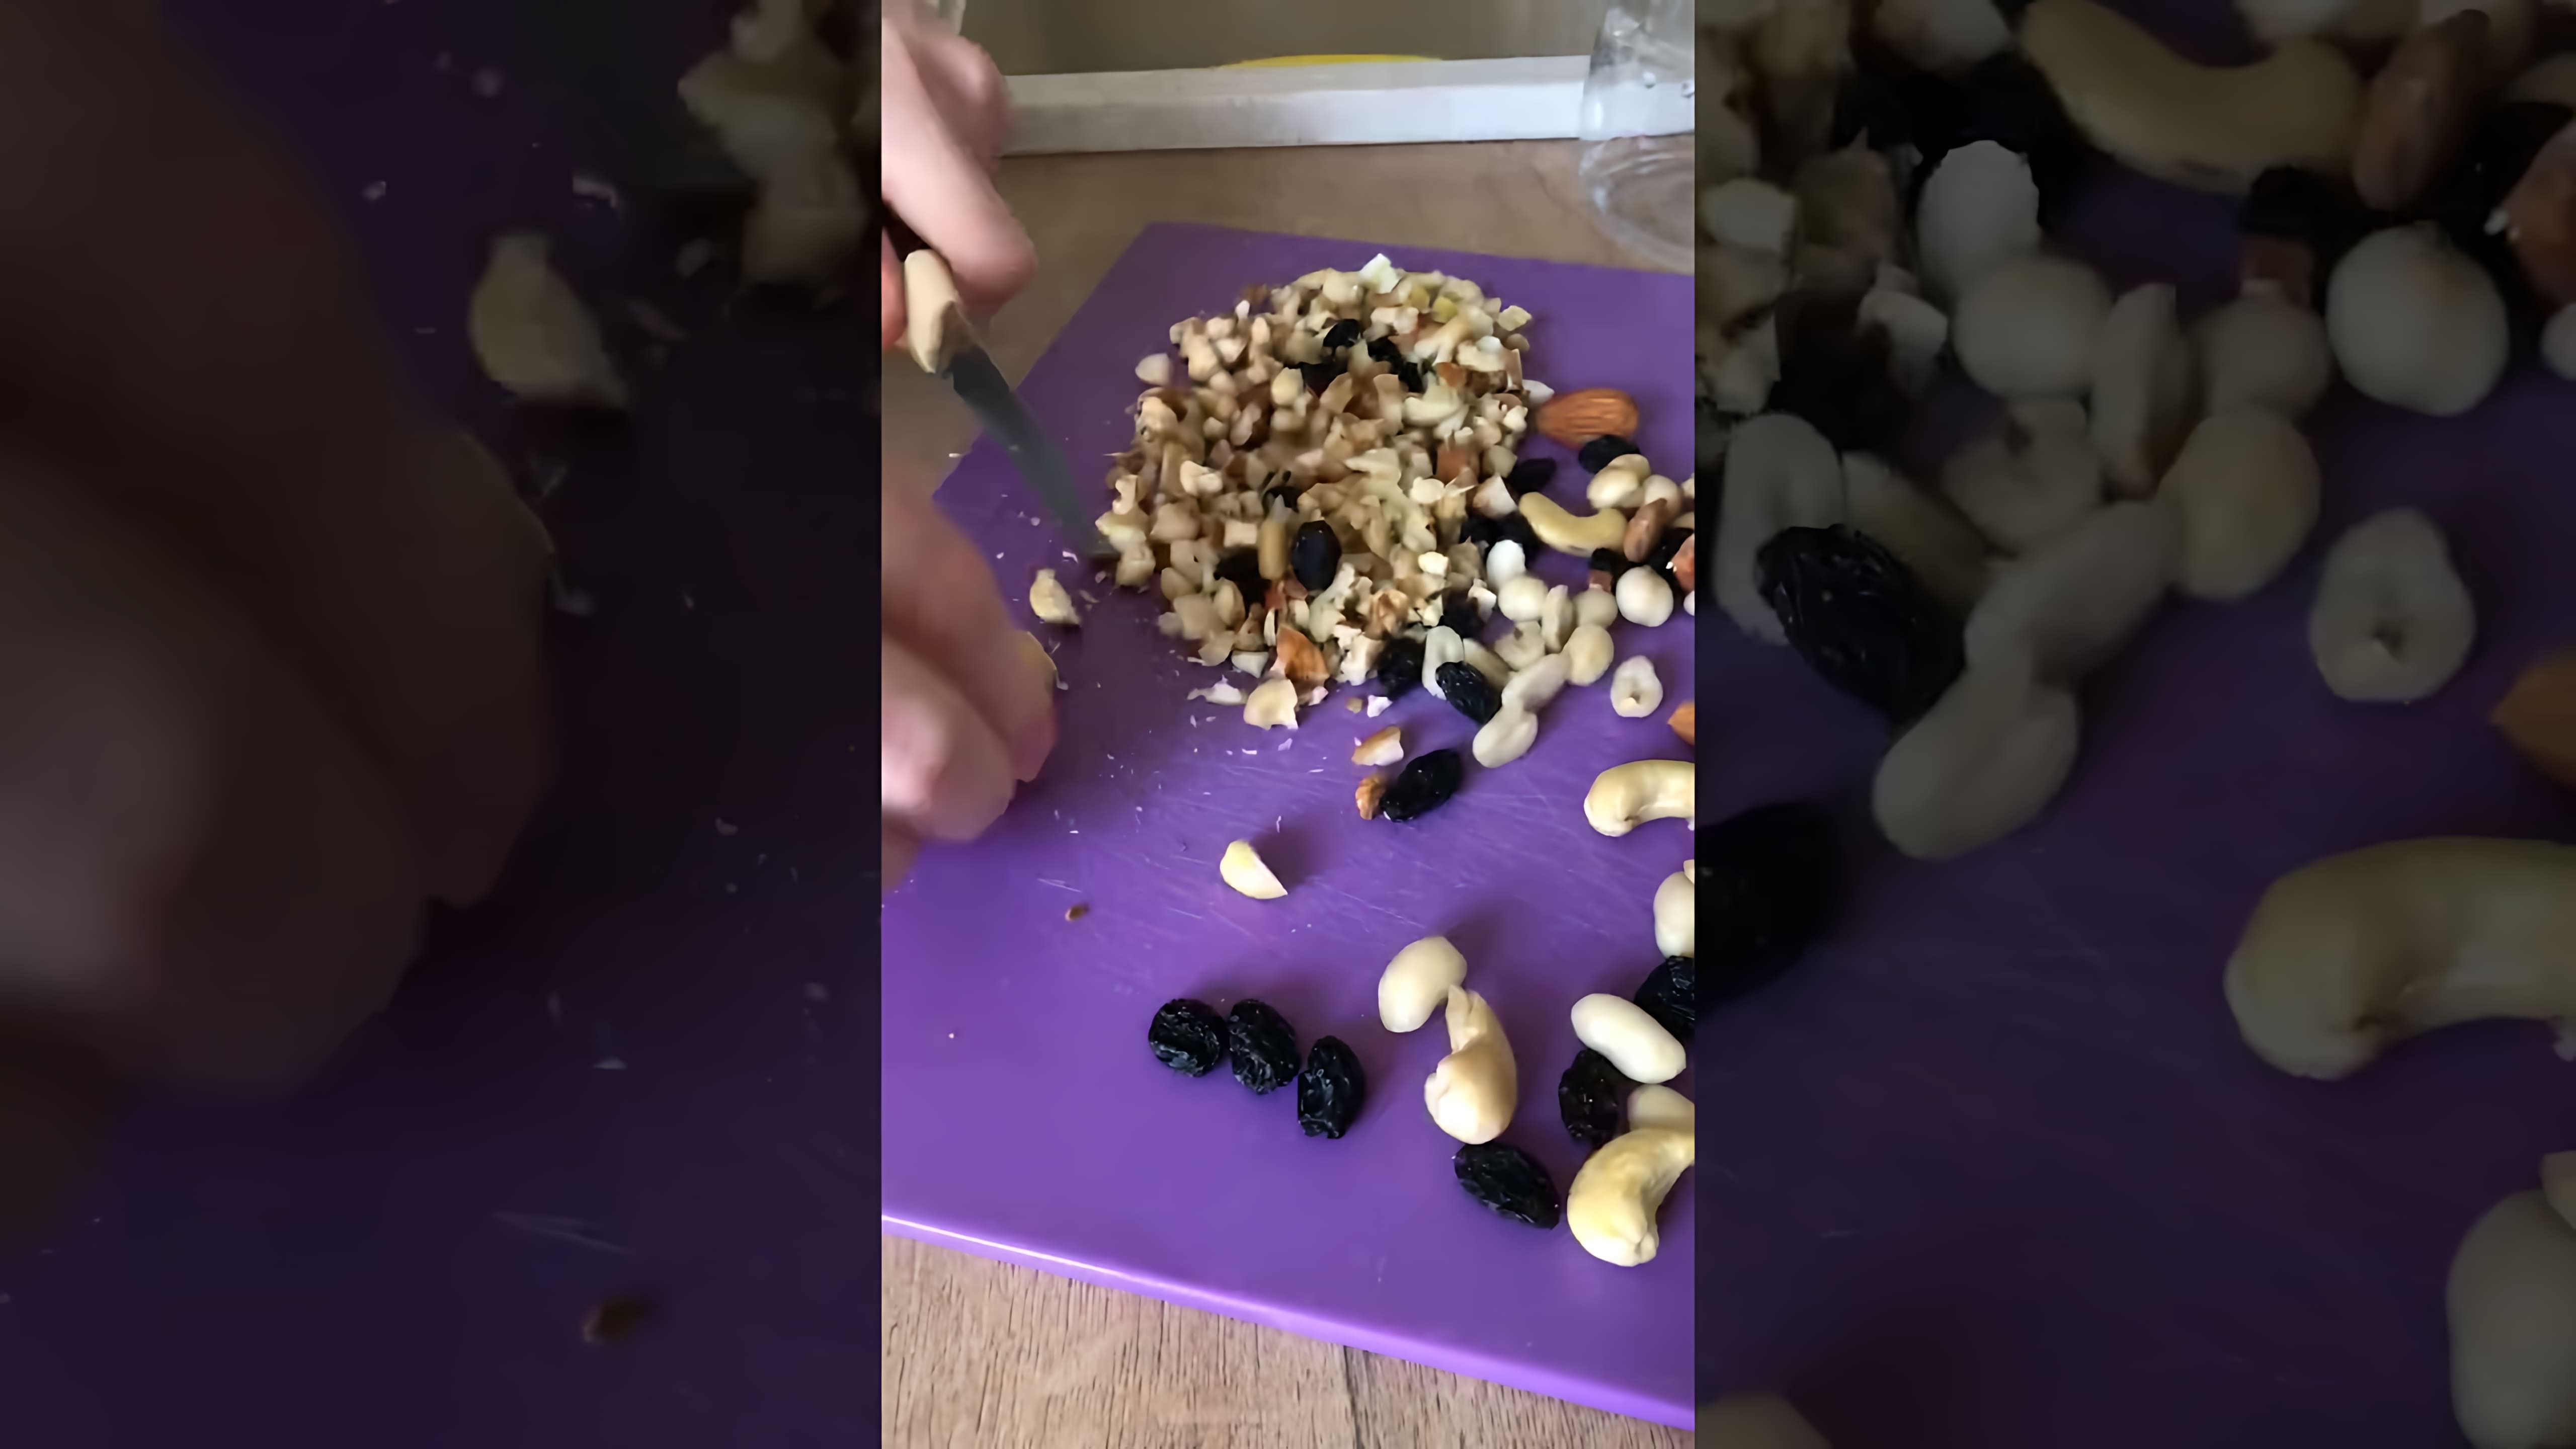 В этом видео-ролике мы увидим, как приготовить вкусный и полезный десерт - мёд с орешками